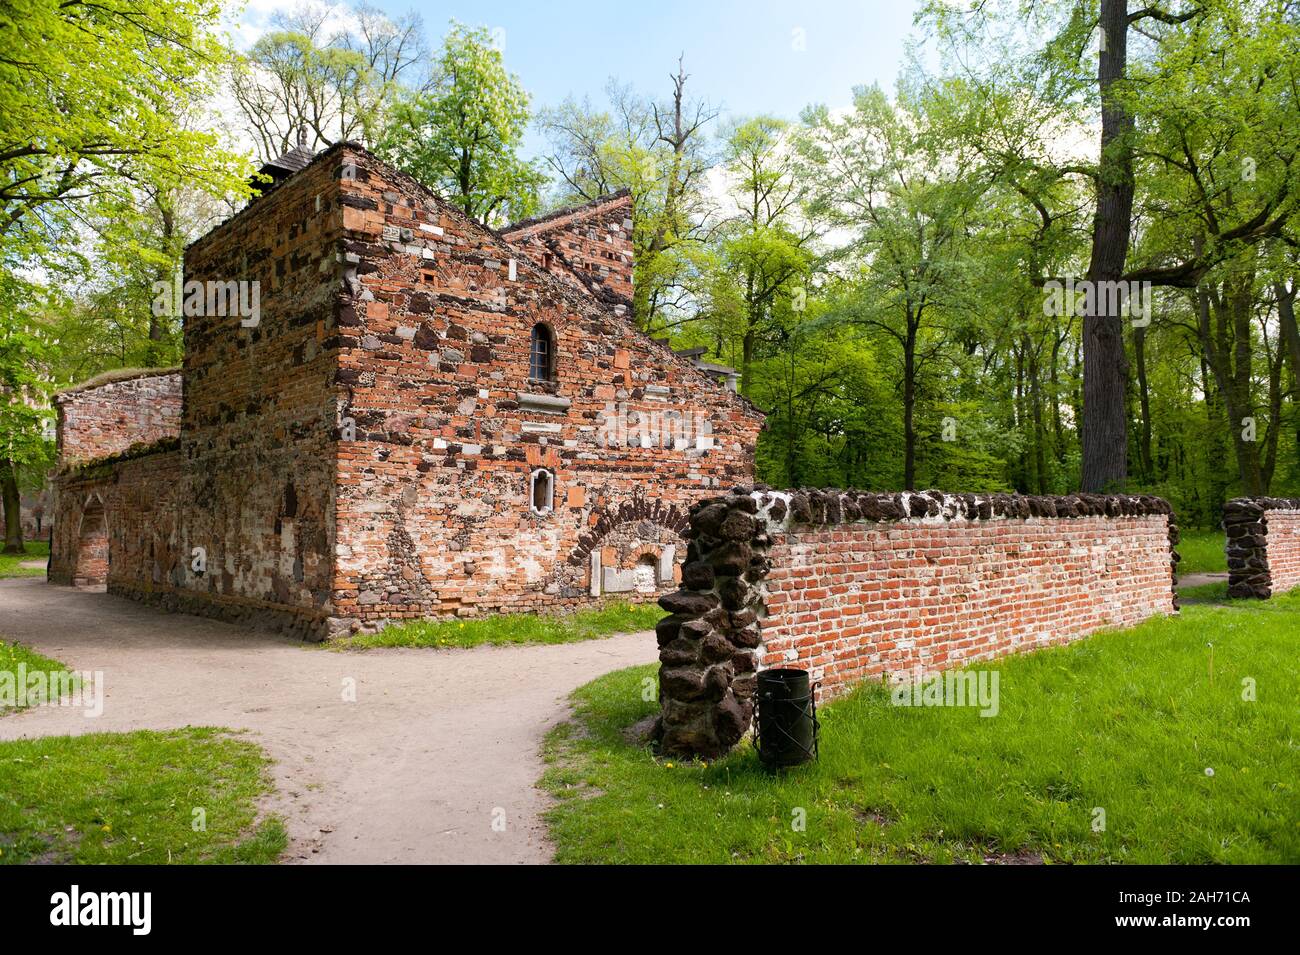 Przybytek Arcykapłana Außenansicht, der Hohepriester Heiligtum Gebäude im romantischen Park in der Nähe von Arkadia Nieborów, Polen, Europa, besuchen. Stockfoto